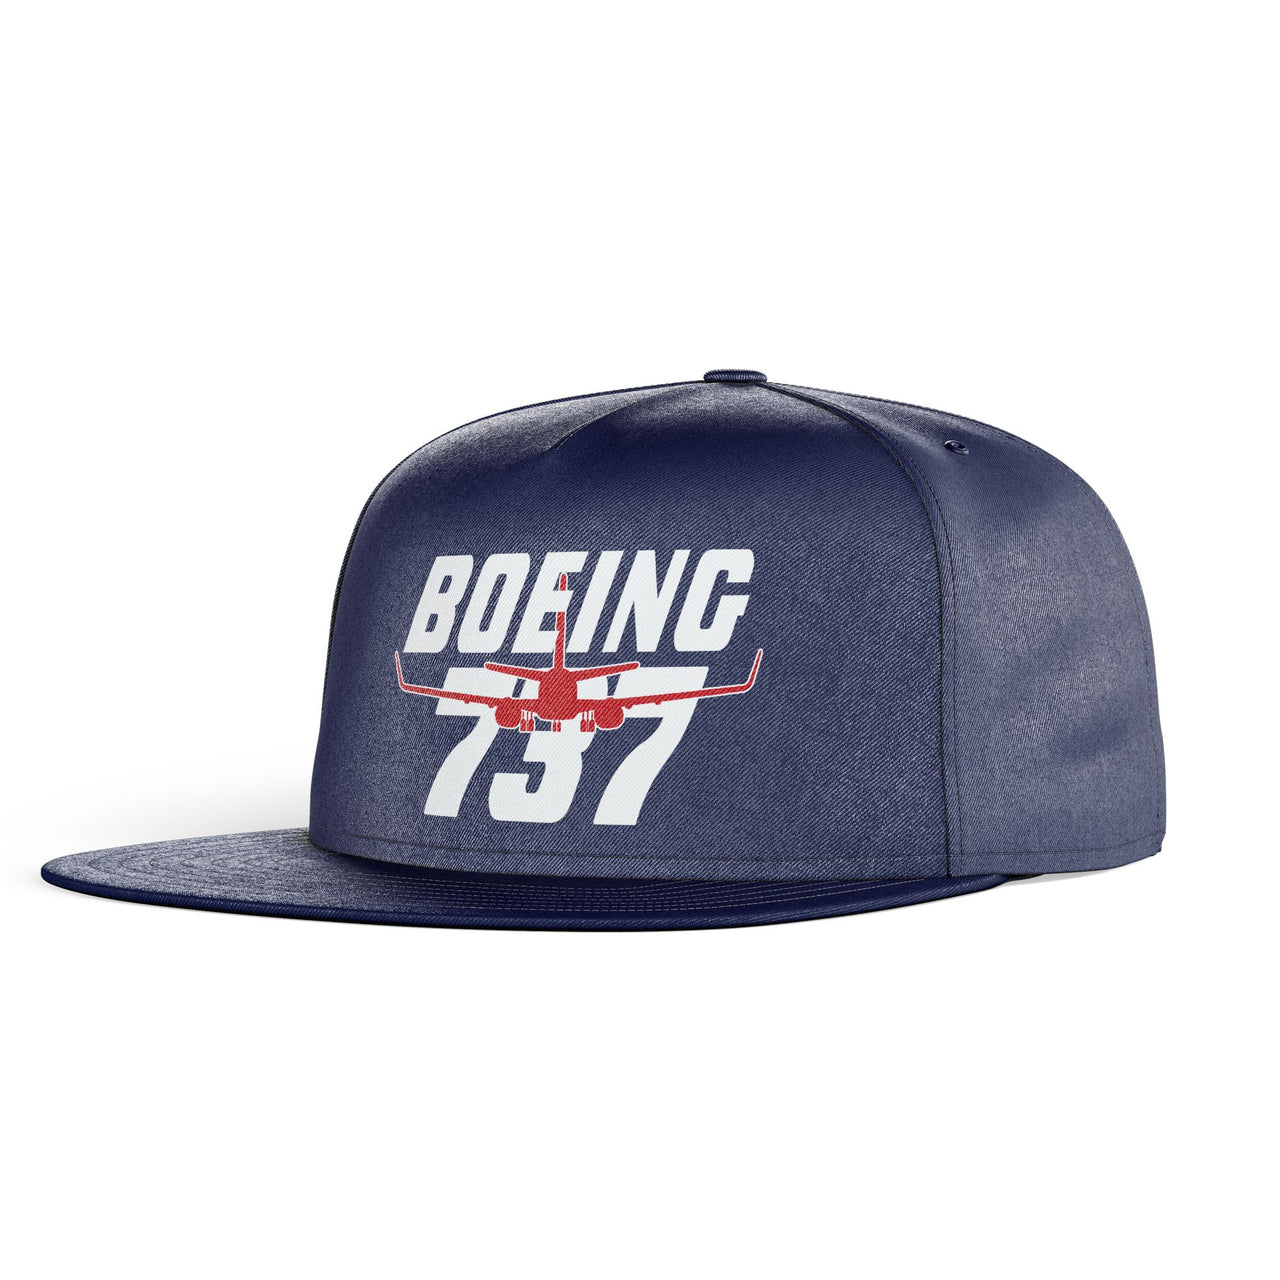 Amazing Boeing 737 Designed Snapback Caps & Hats